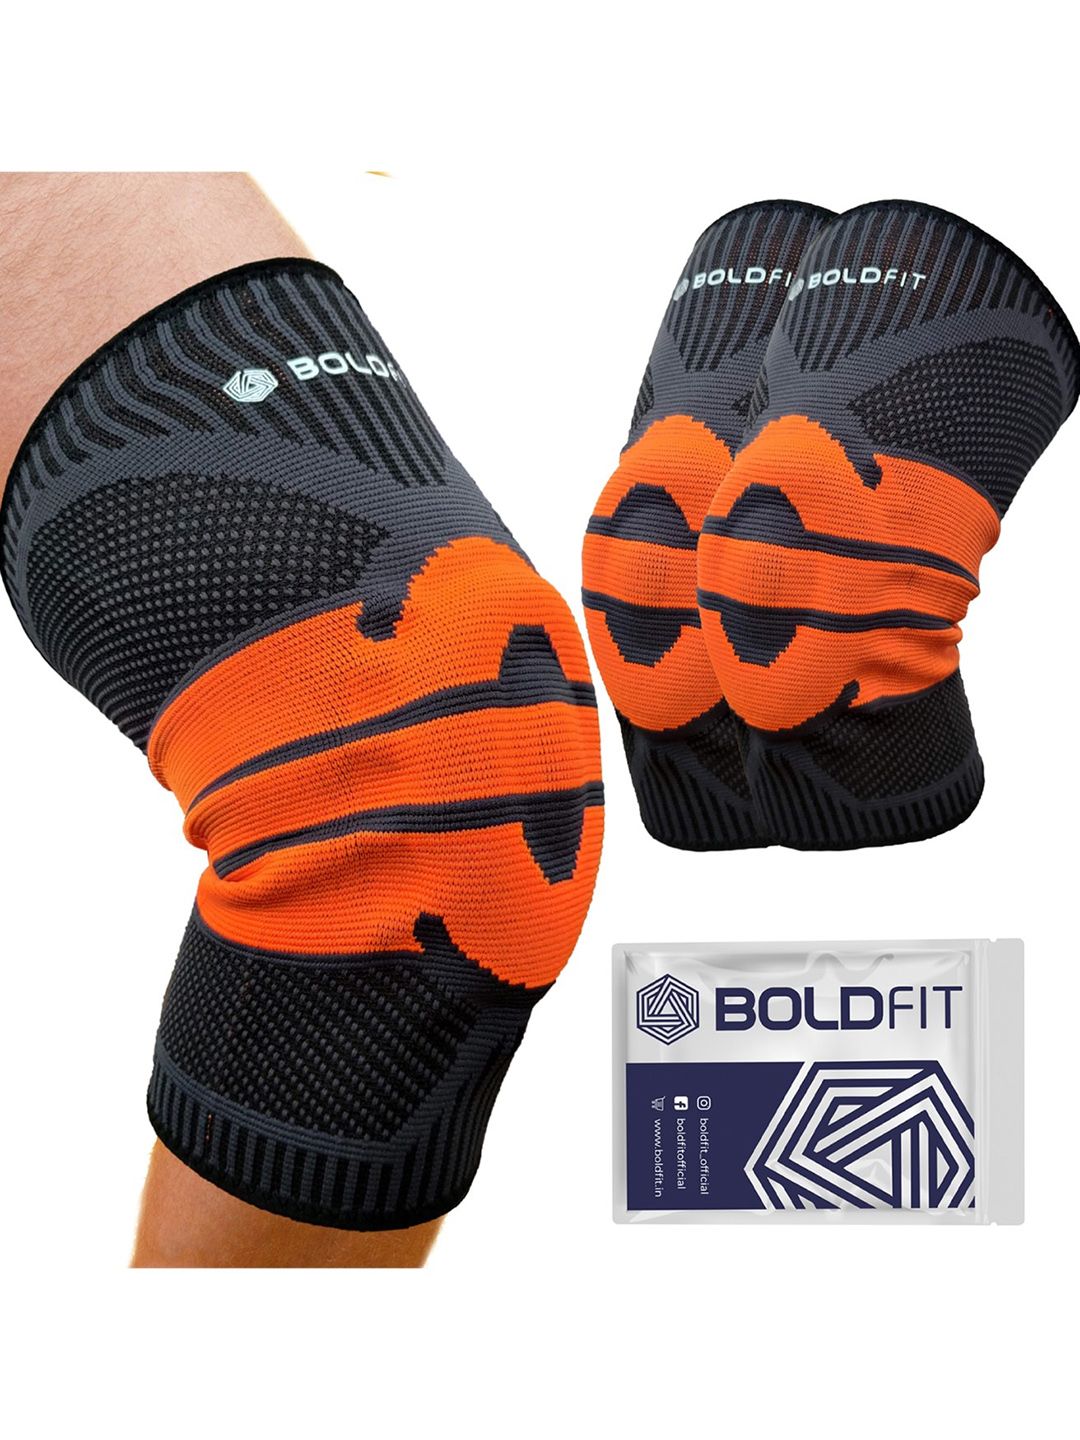 BOLDFIT Black & Orange Solid Knee Support Cap Price in India